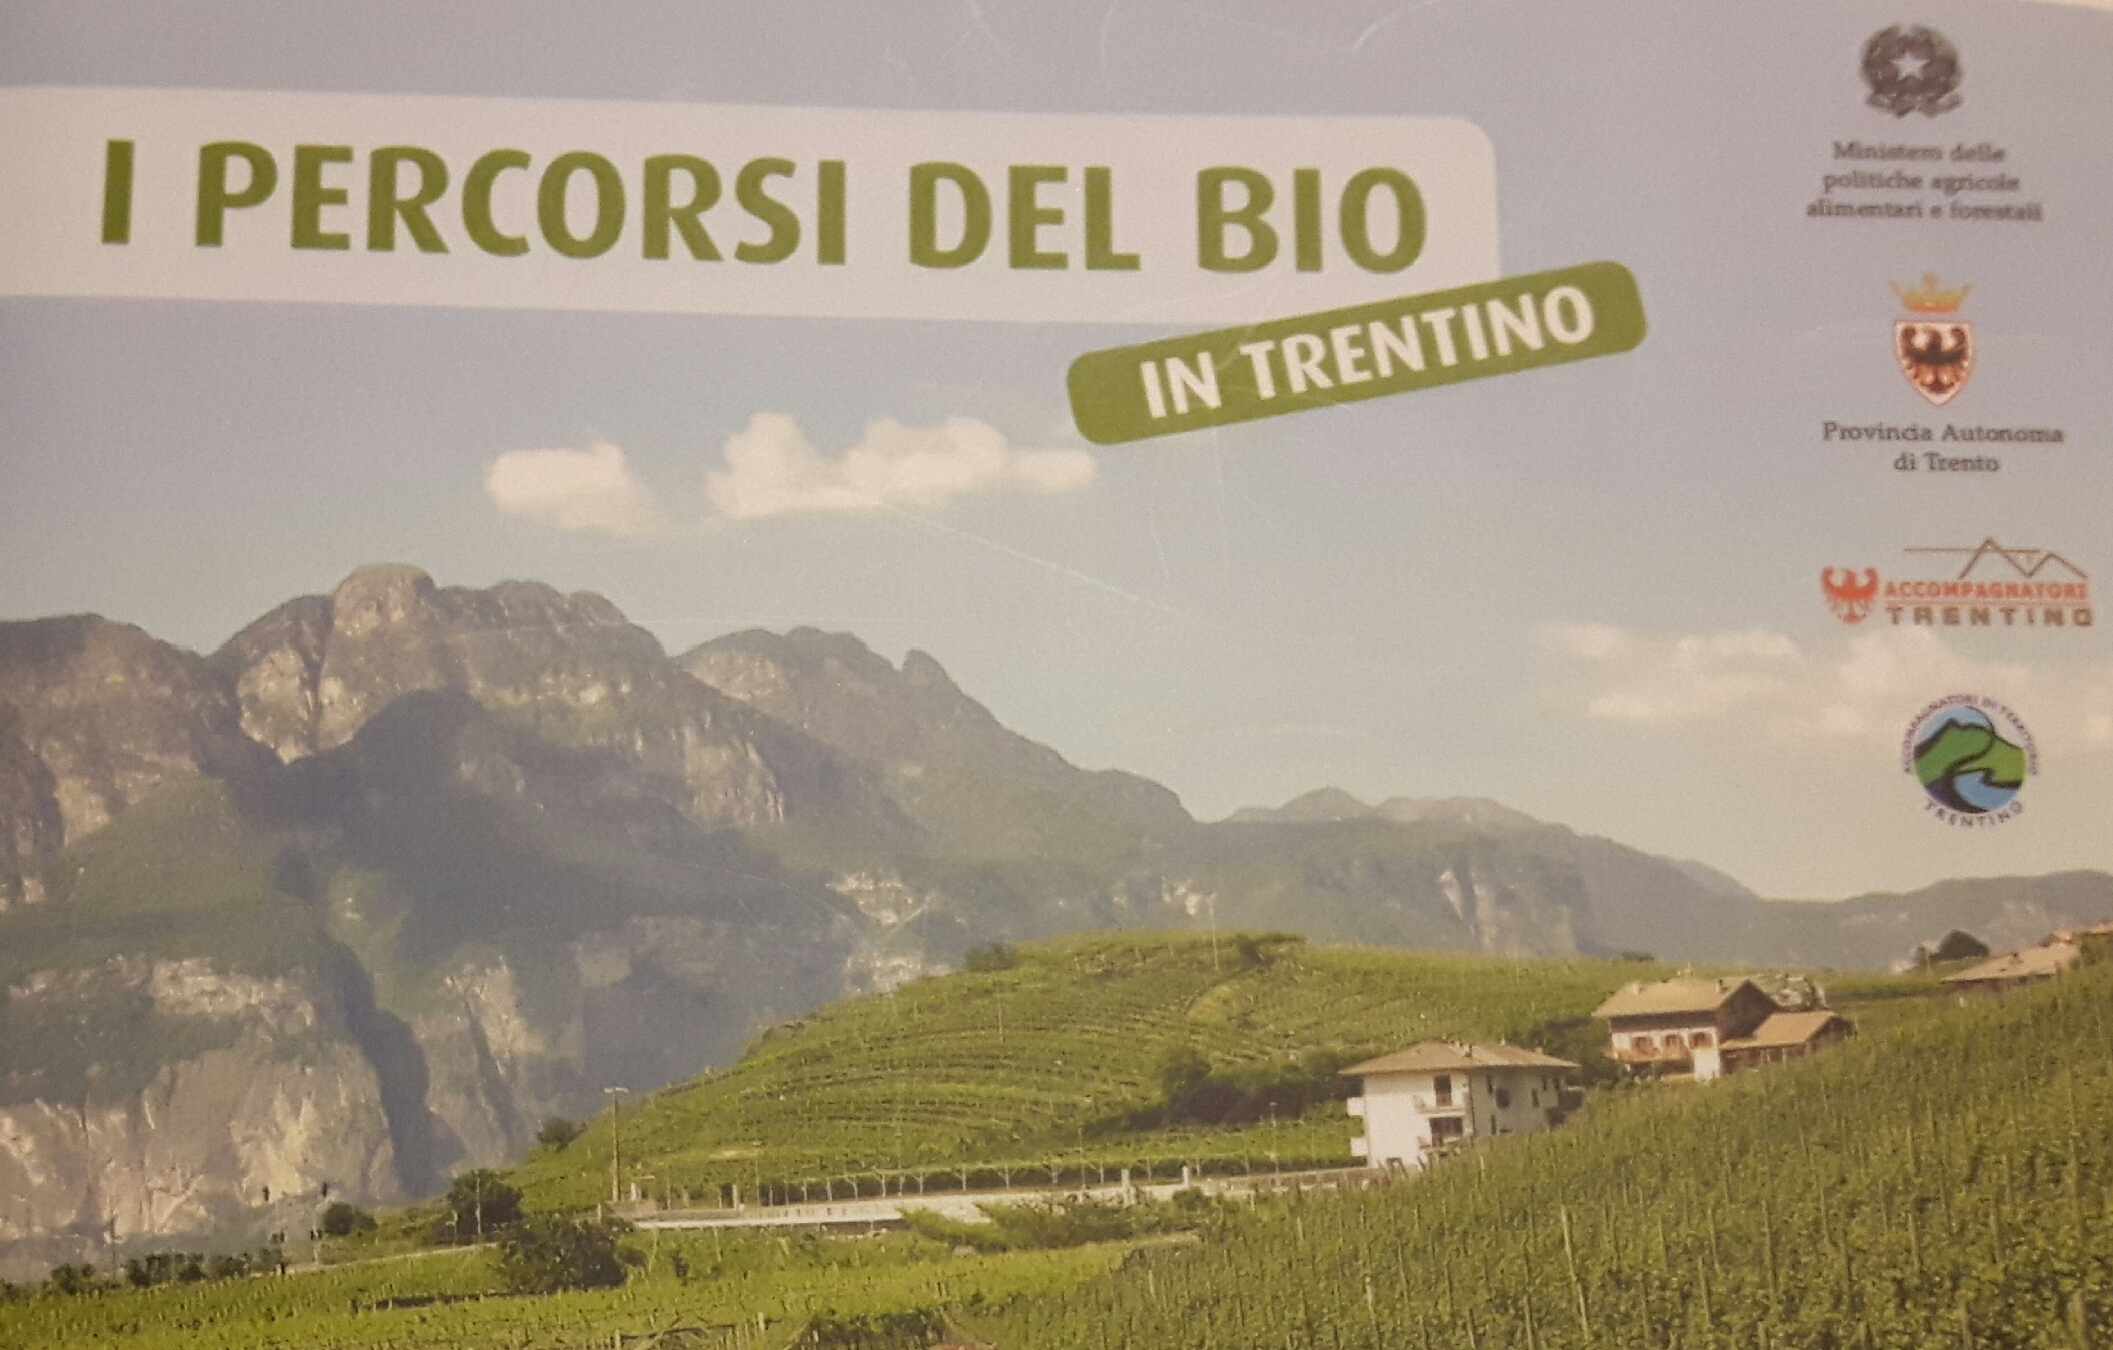 Mozione: un Percorso del Bio sulla collina ad est di Trento